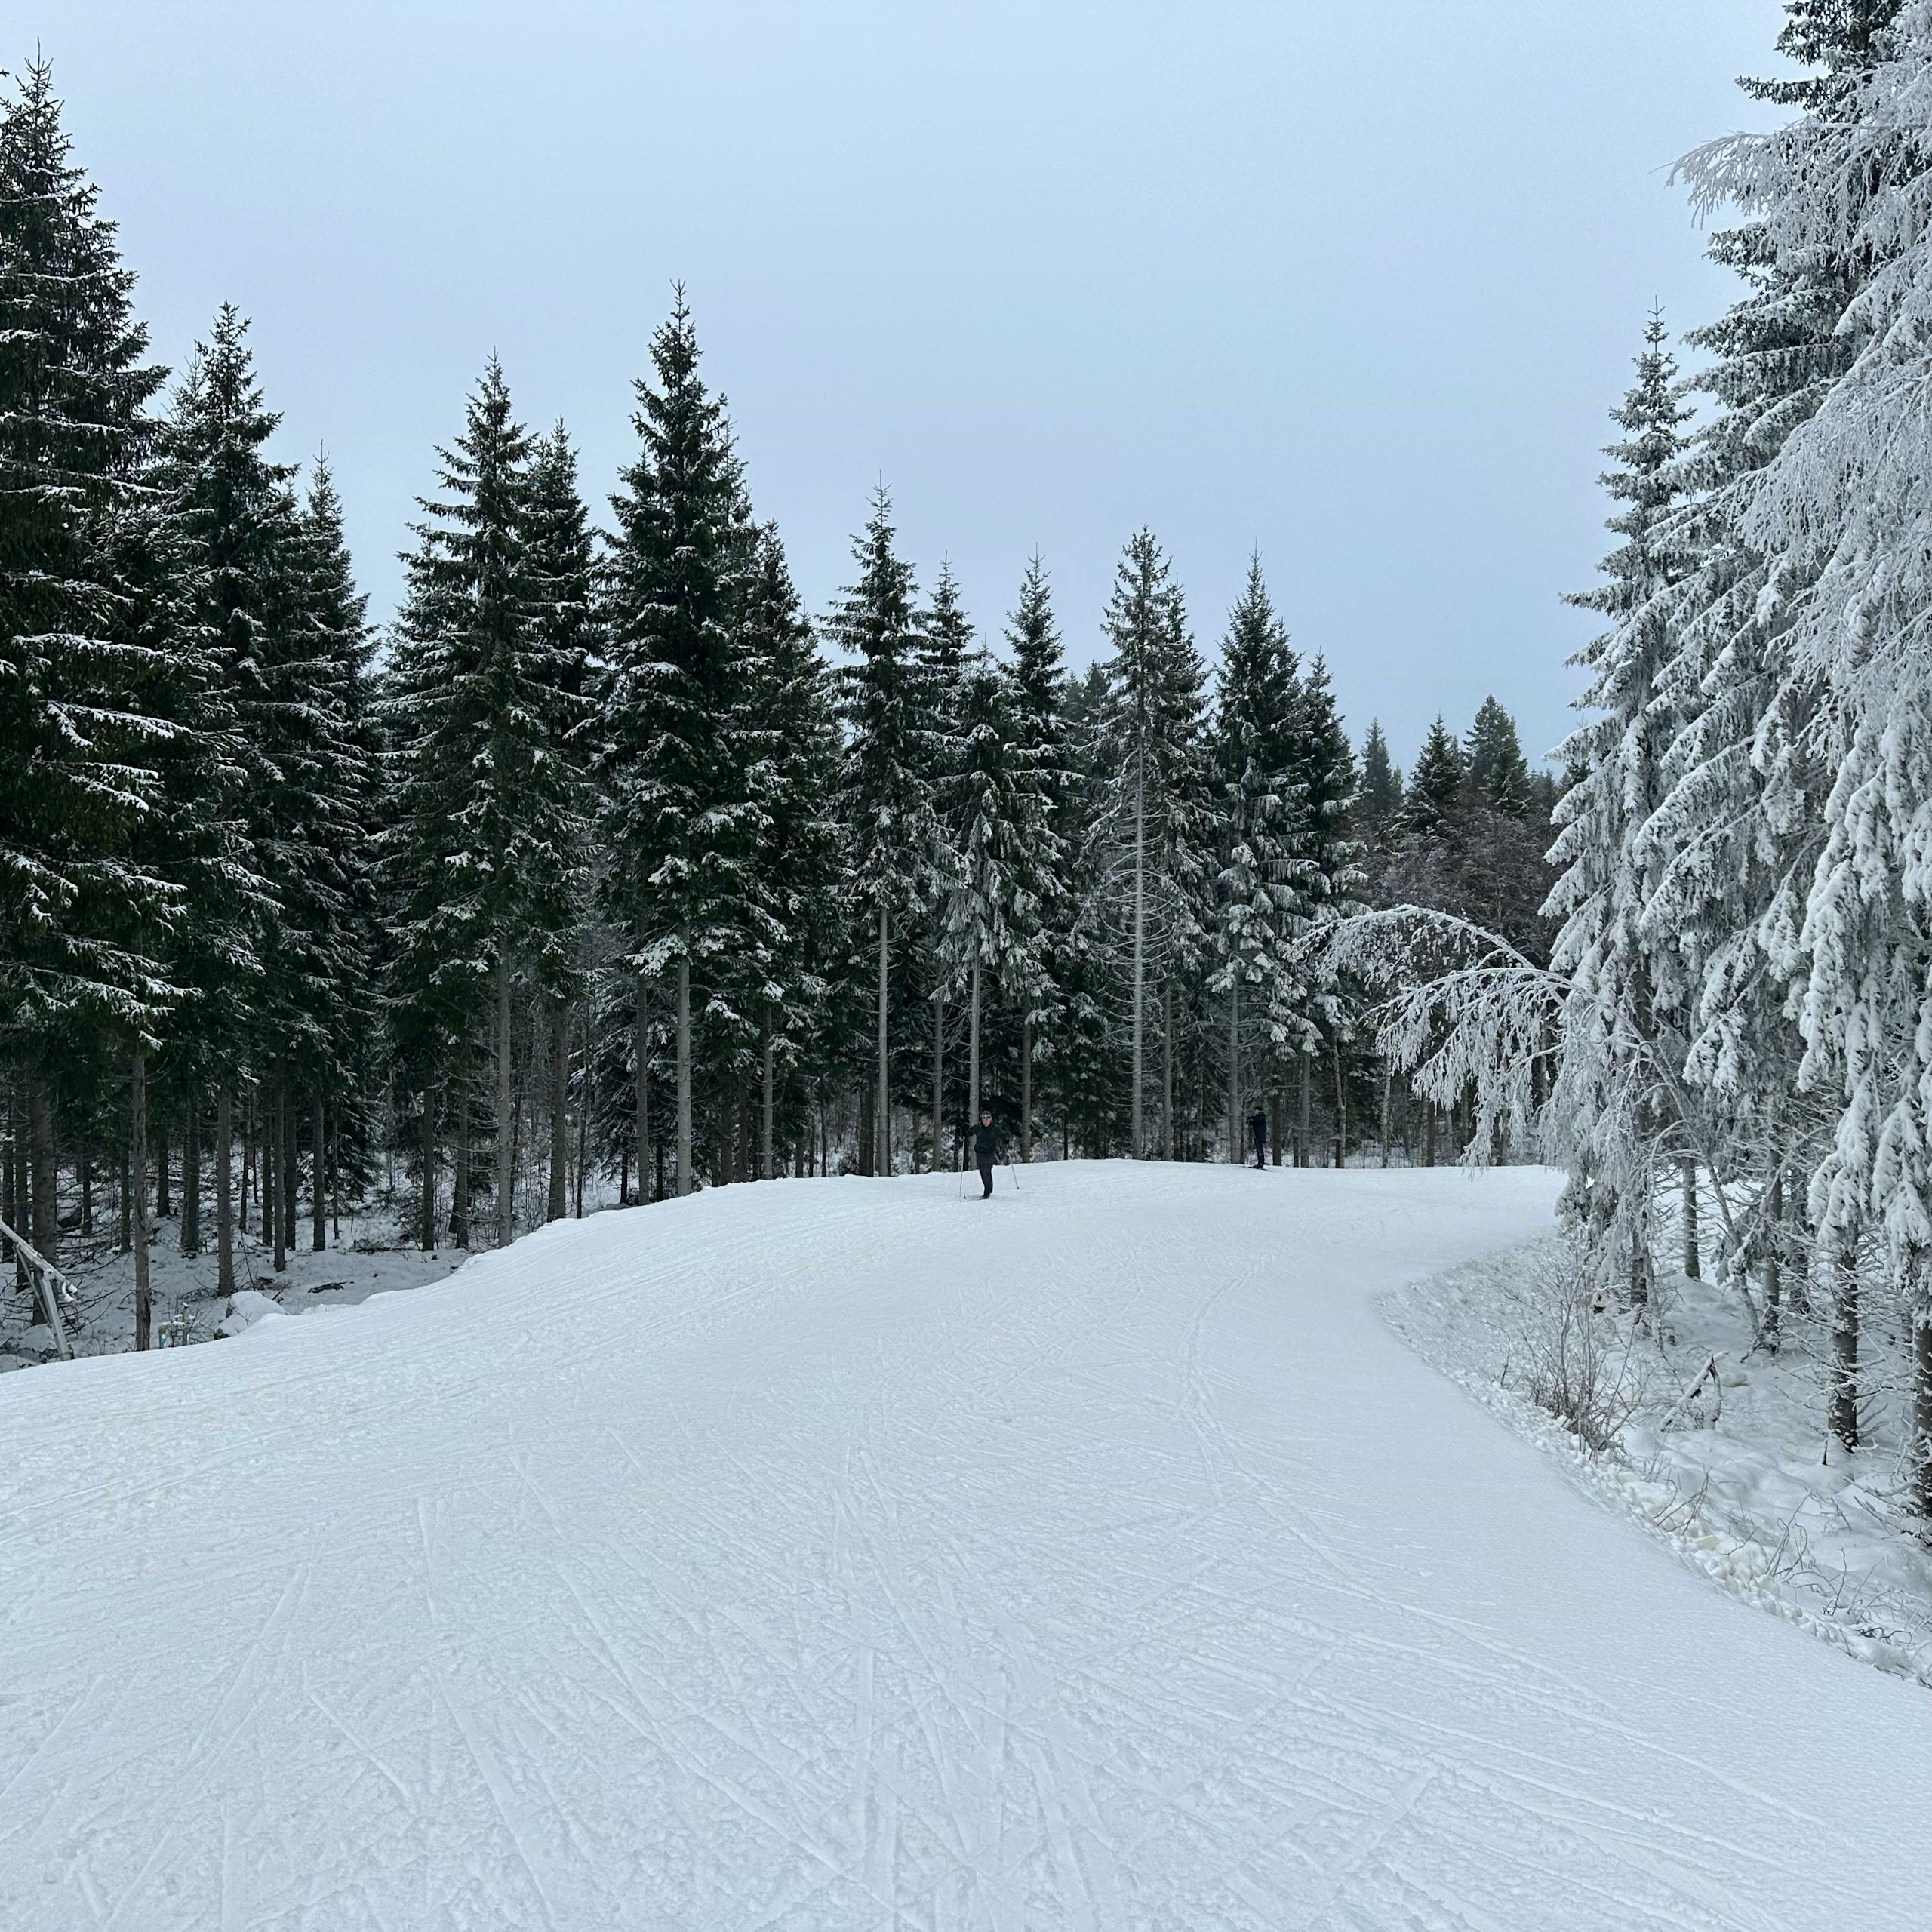 Amalies Geburtstagsausflug – komm mit in den Skiurlaub nach Schweden